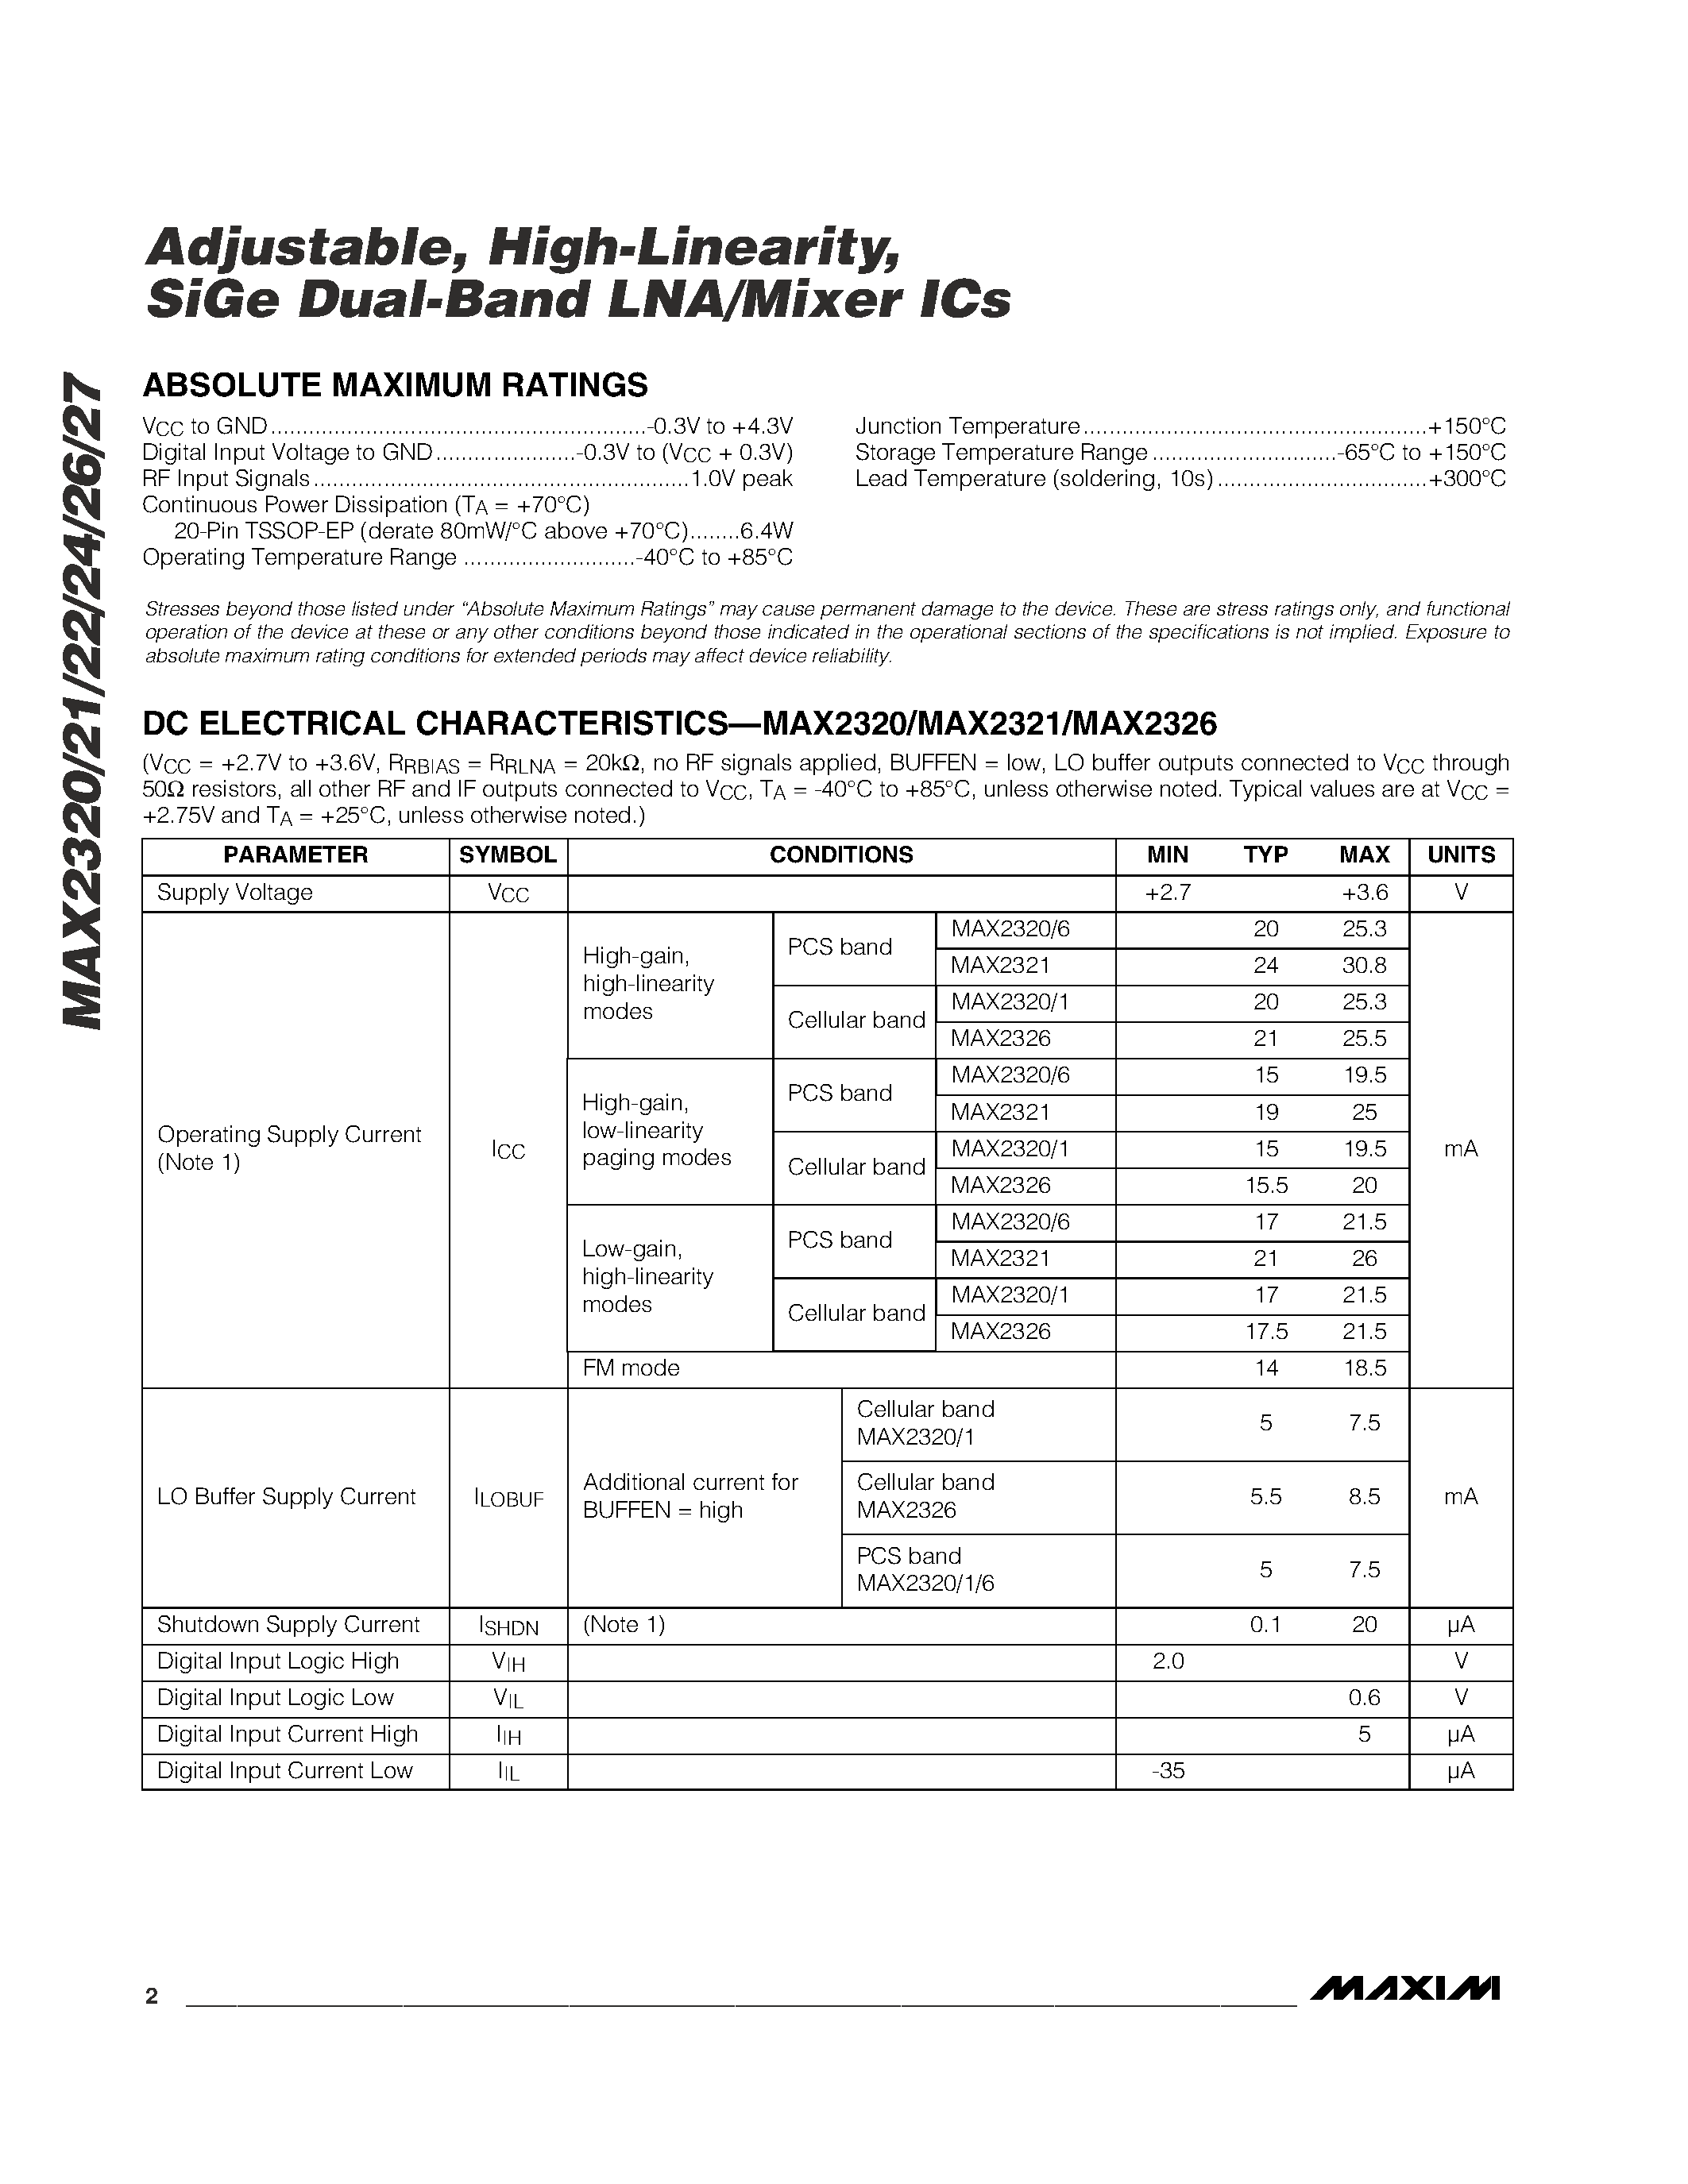 Даташит MAX2327 - Adjustable / High-Linearity / SiGe Dual-Band LNA/Mixer ICs страница 2